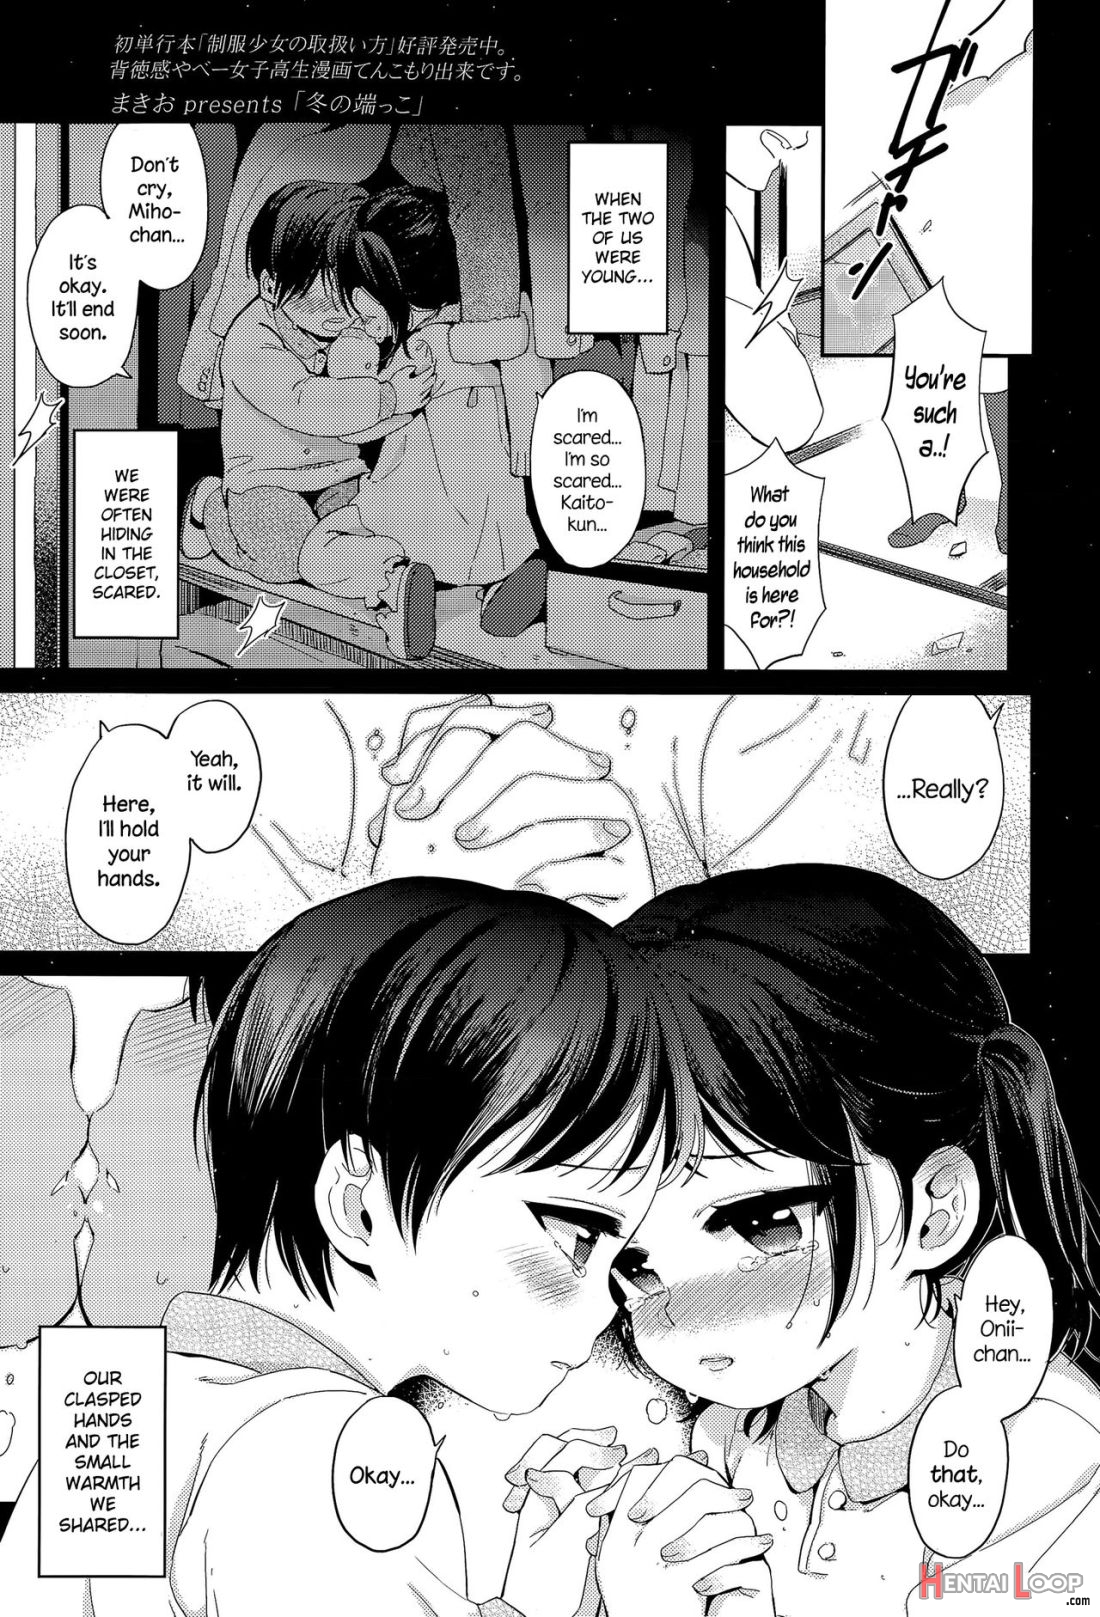 Fuyu No Hashikko page 1